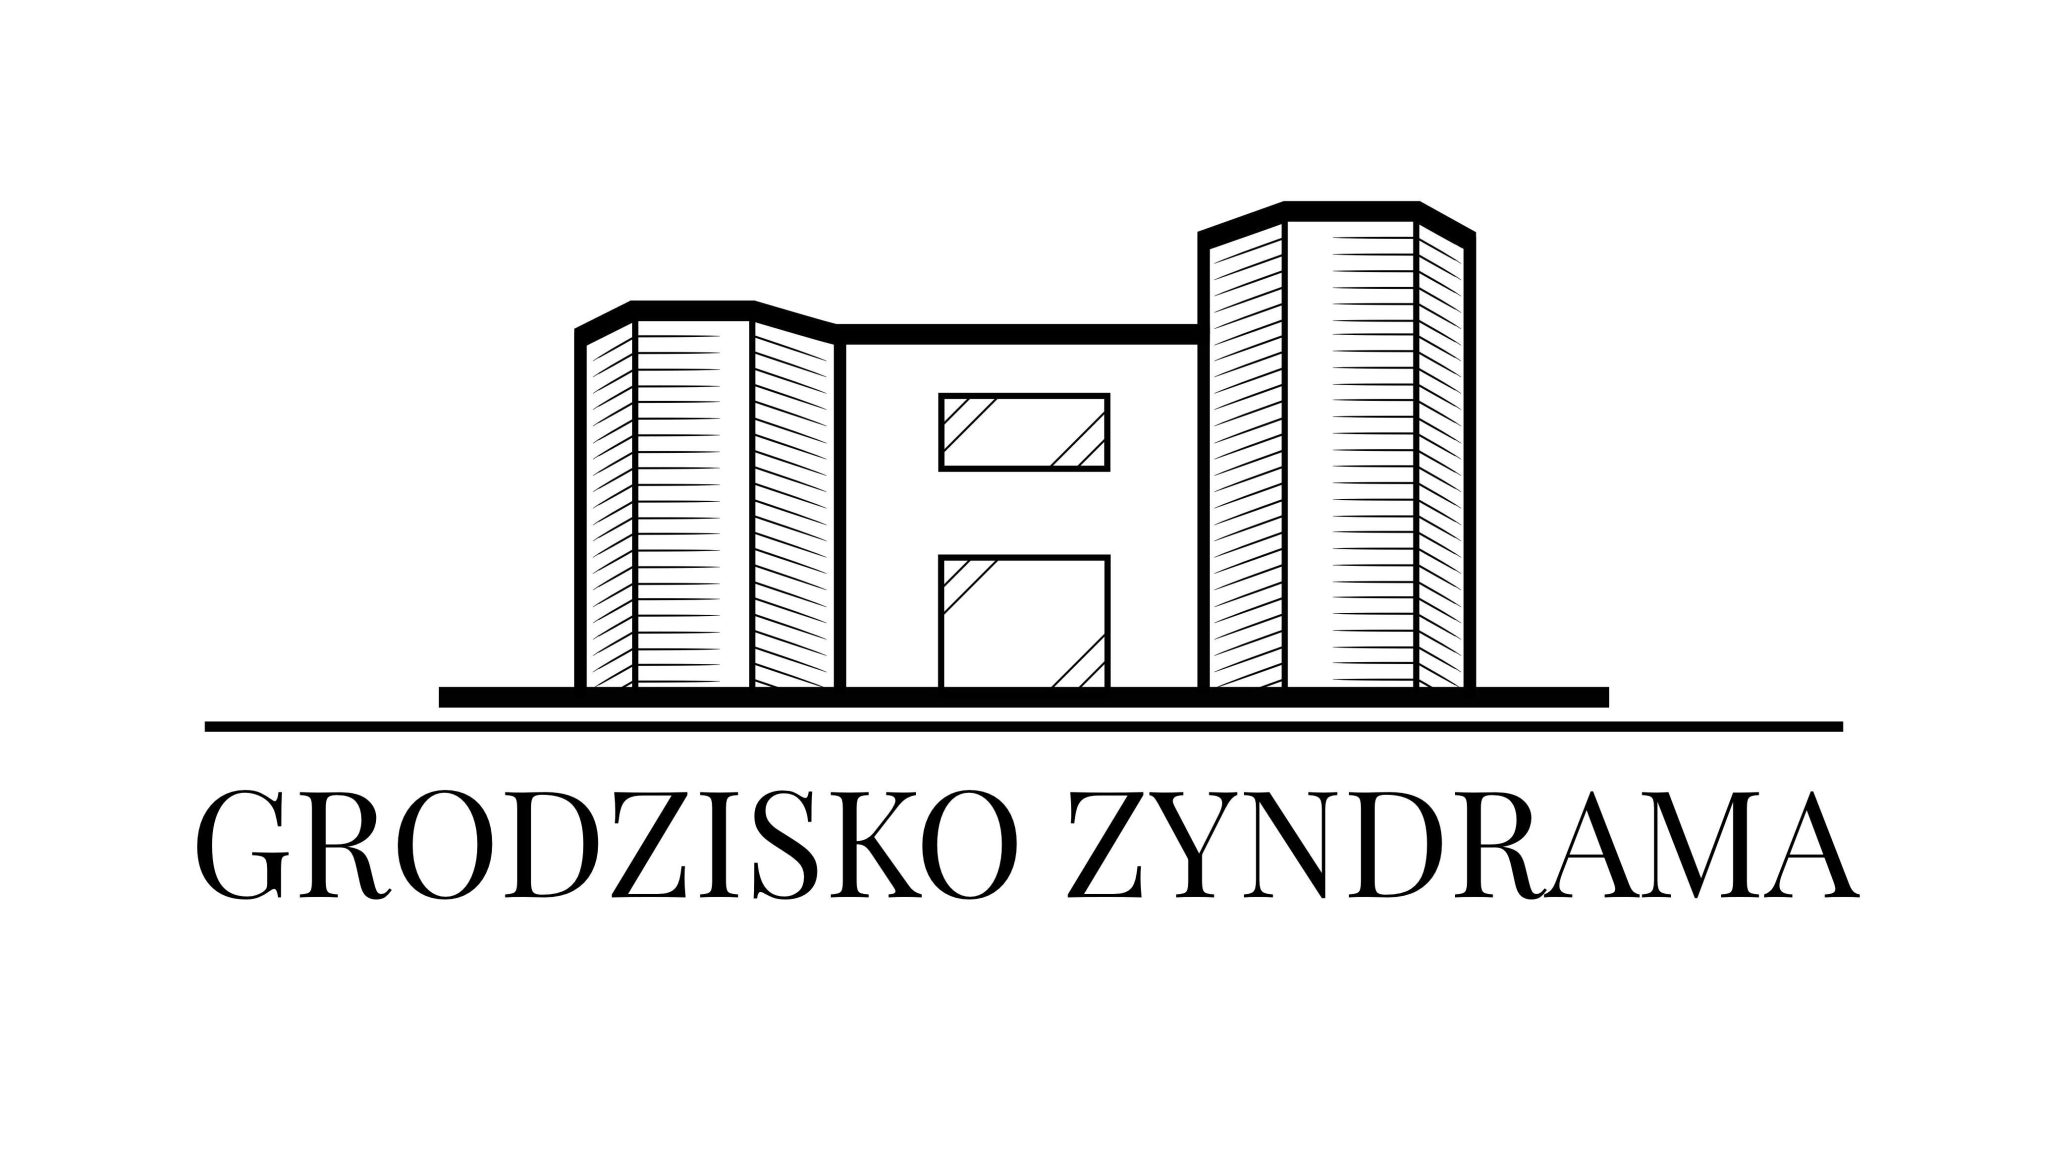 Grodzisko Zyndrama - Logo